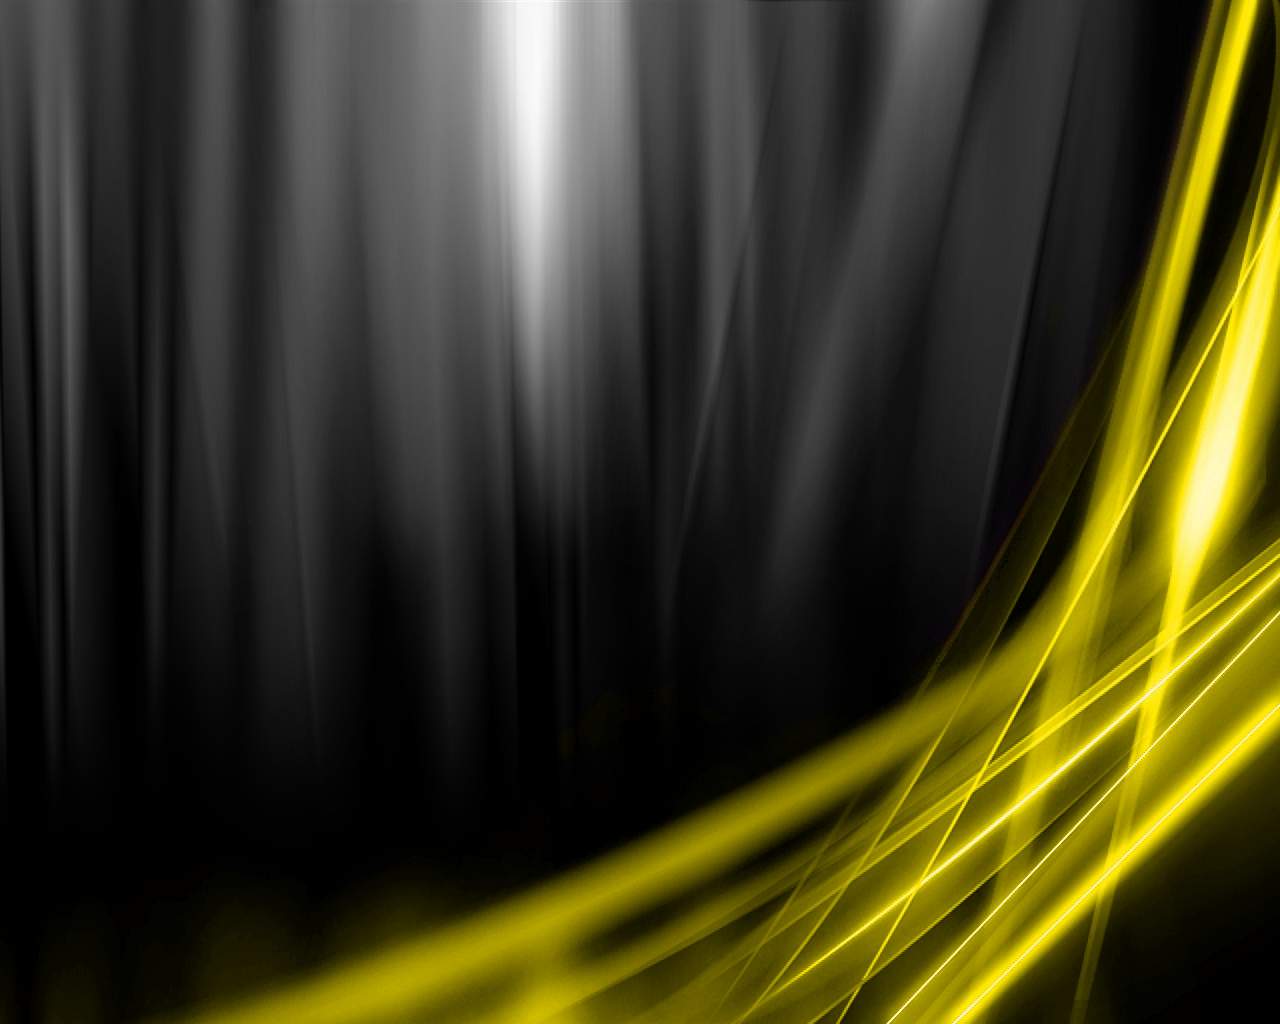 [49+] Yellow and Black Wallpaper | WallpaperSafari.com